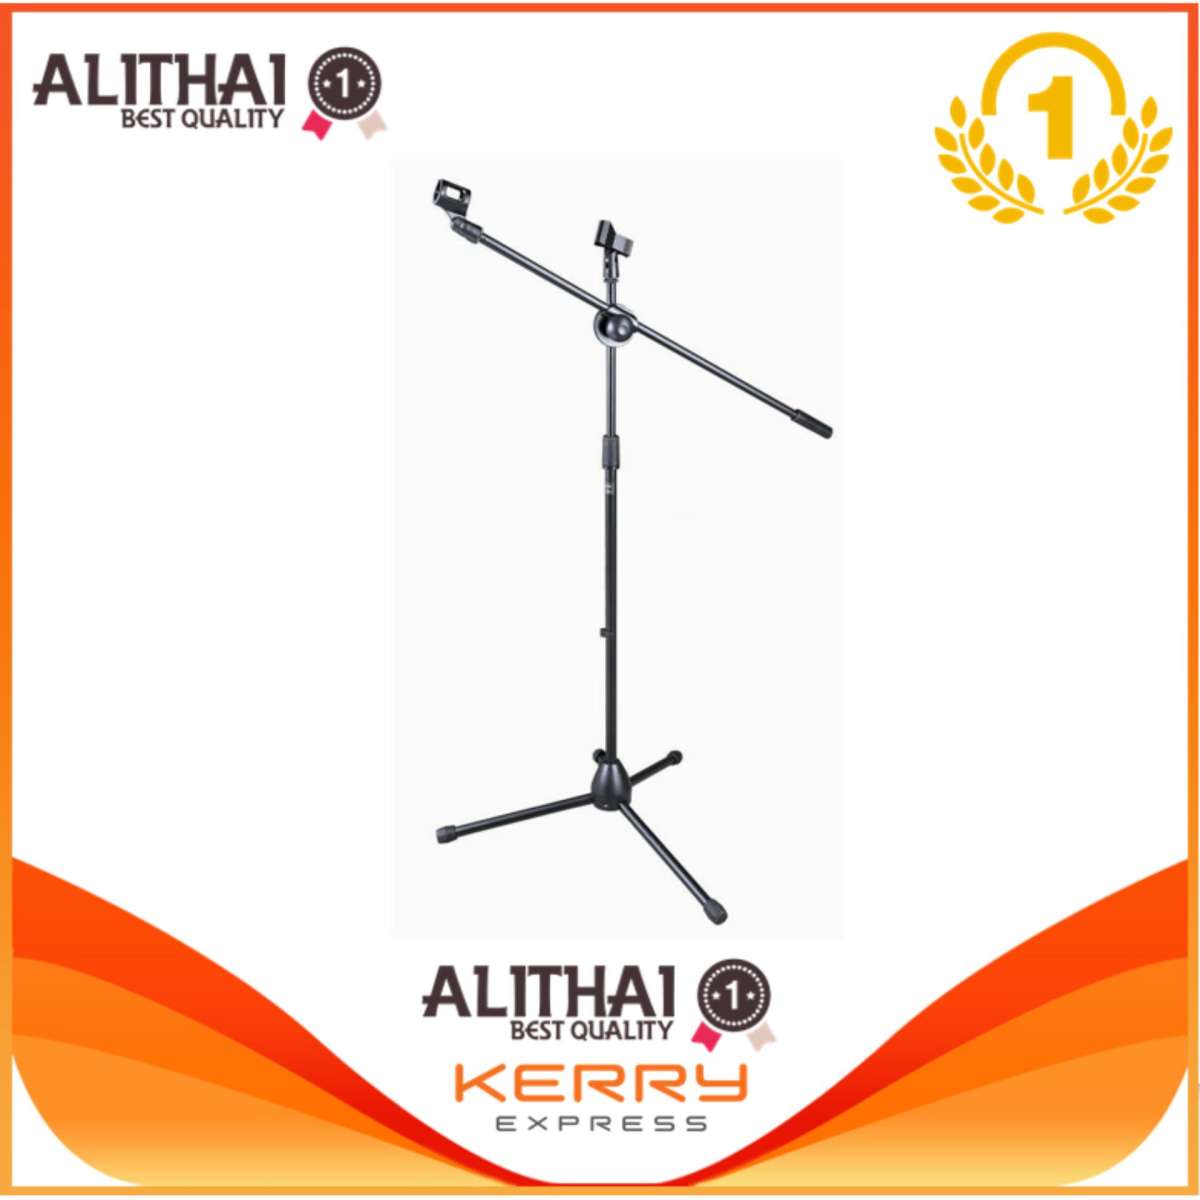 Alithai music ขาตั้งไมค์โครโฟนอย่างดี 2 หัวพร้อมคอจับไมค์ 2 ตัว ตั้งพื้นแขนบูมปรับระดับสูงต่ำได้ 185ซม.